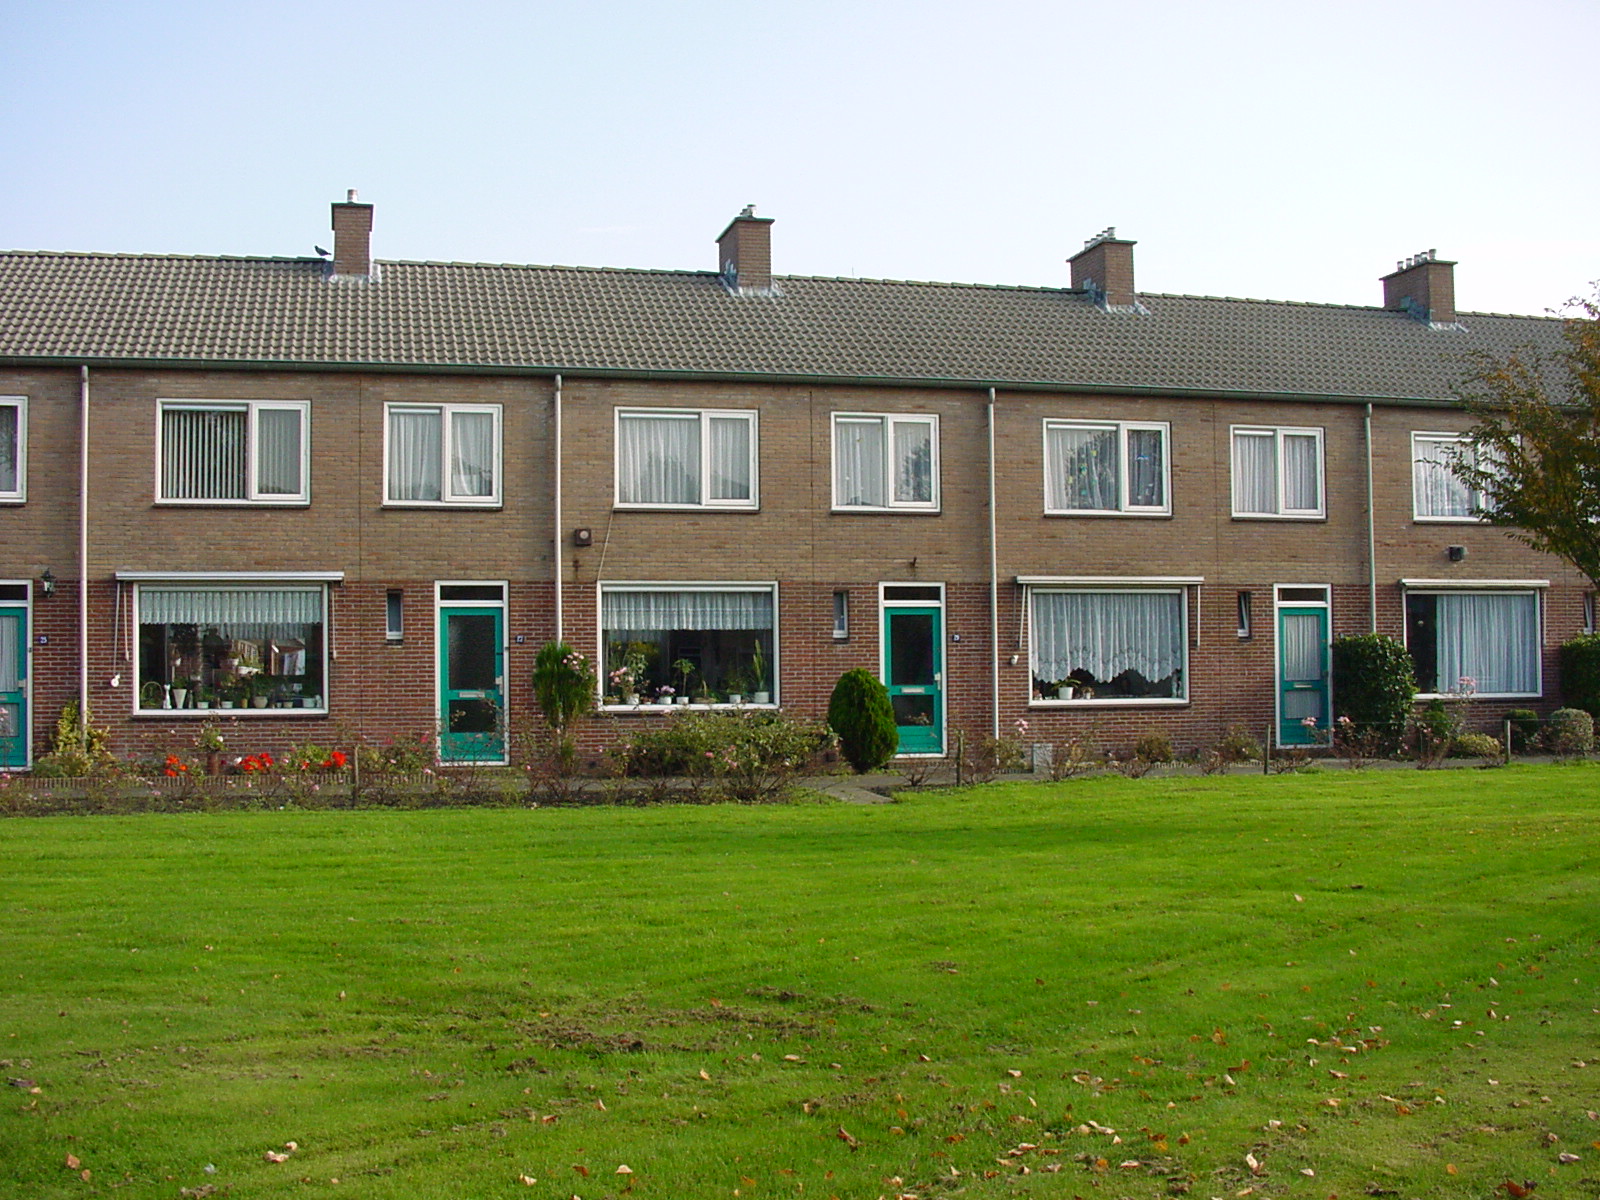 Dokter Broekhoffstraat 35, 7913 AN Hollandscheveld, Nederland